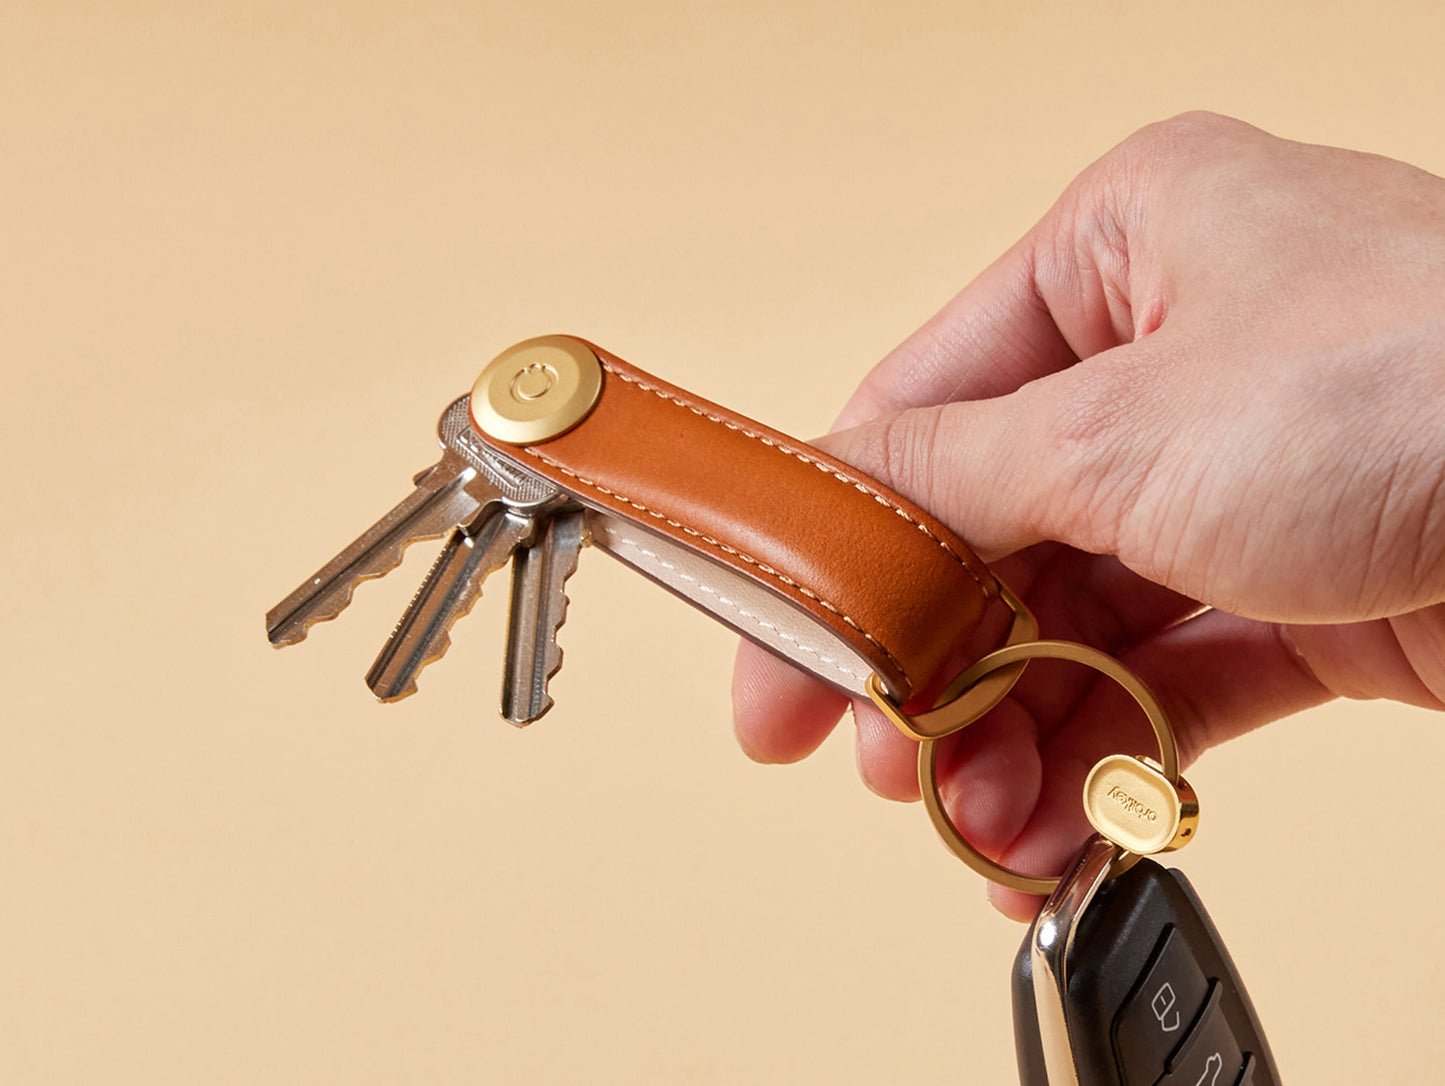 Lube vial holder – Ringer Keys